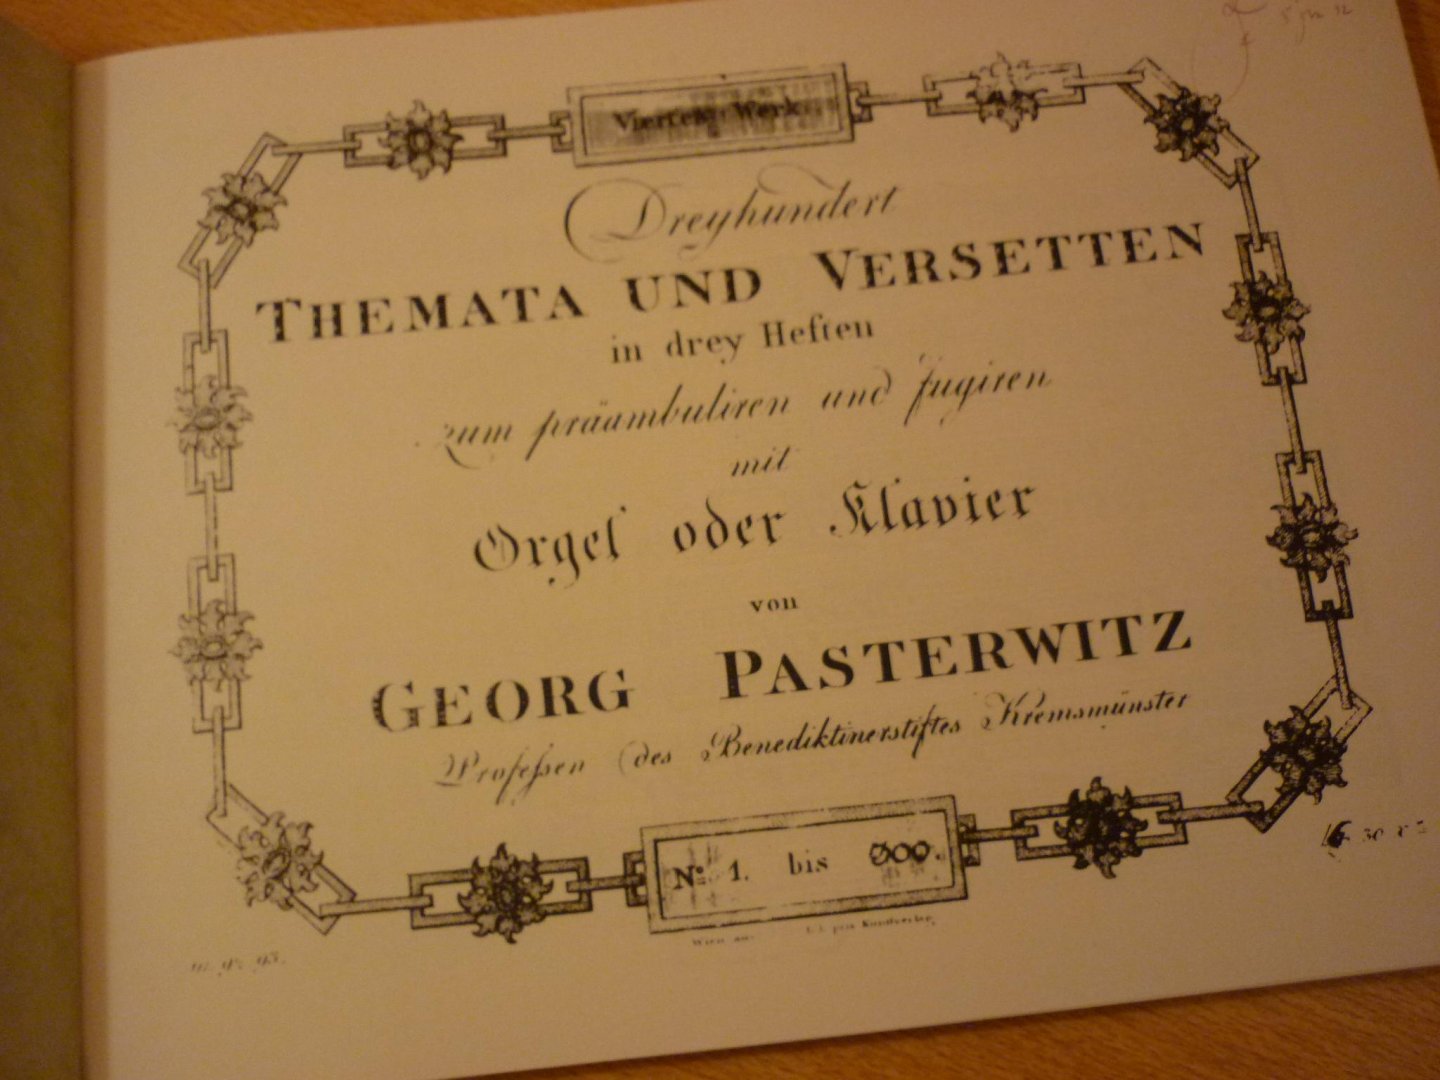 Pasterwiz; Georg (1730 - 1803) - Dreyhundert Themata und Versetten fur Orgel oder Klavier (1803); "Sueddeutsche Orgelmeister Des Barock"; Band XVI